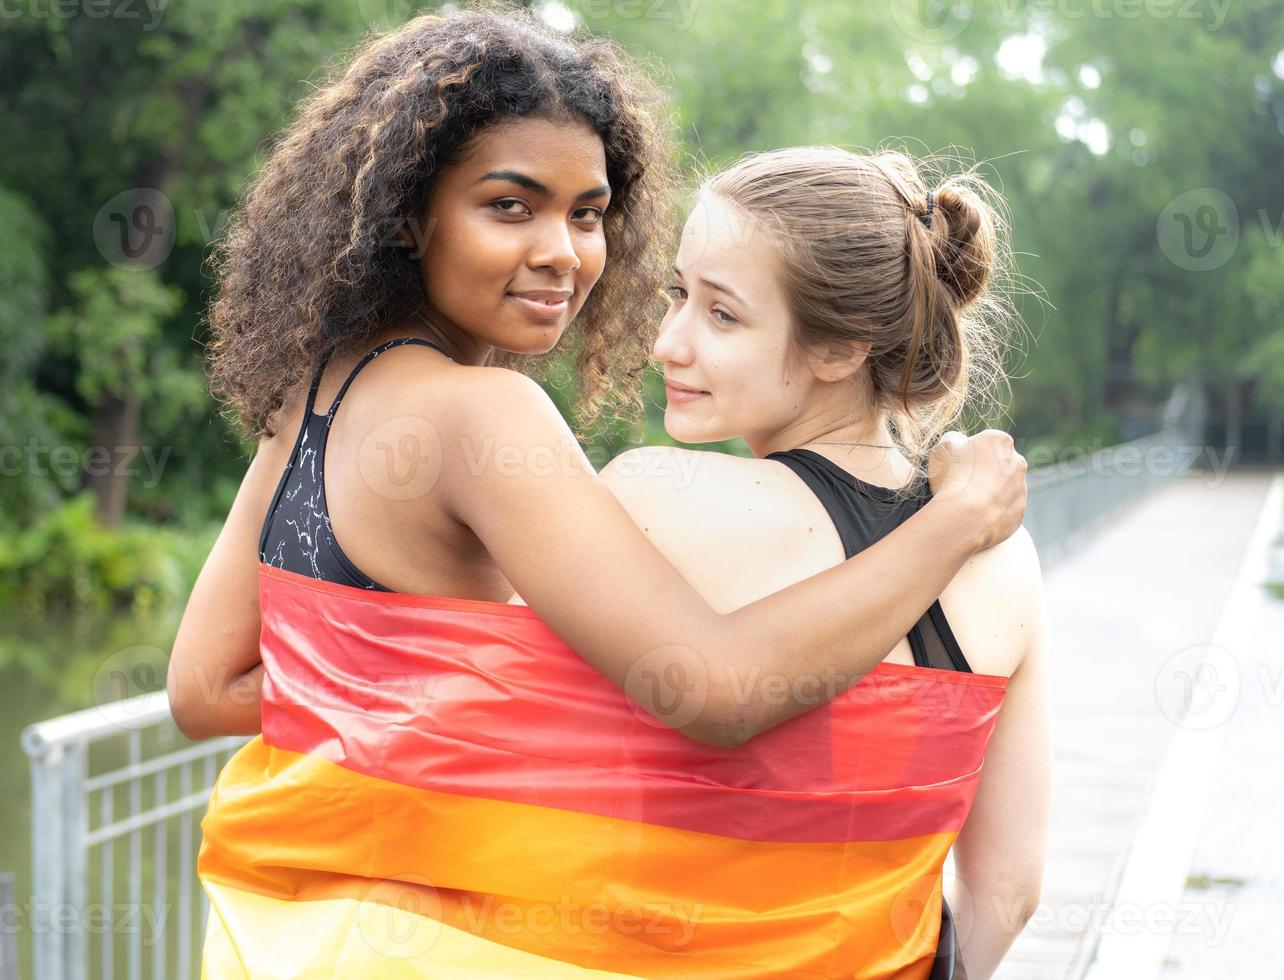 deux lesbiennes amitié avec le drapeau de la fierté arc-en-ciel. personne gay gaie s'amusant avec l'égalité de respect de l'amour et de la liberté de vie. diversité du jeune couple homosexuel, droits lgbtq. photo